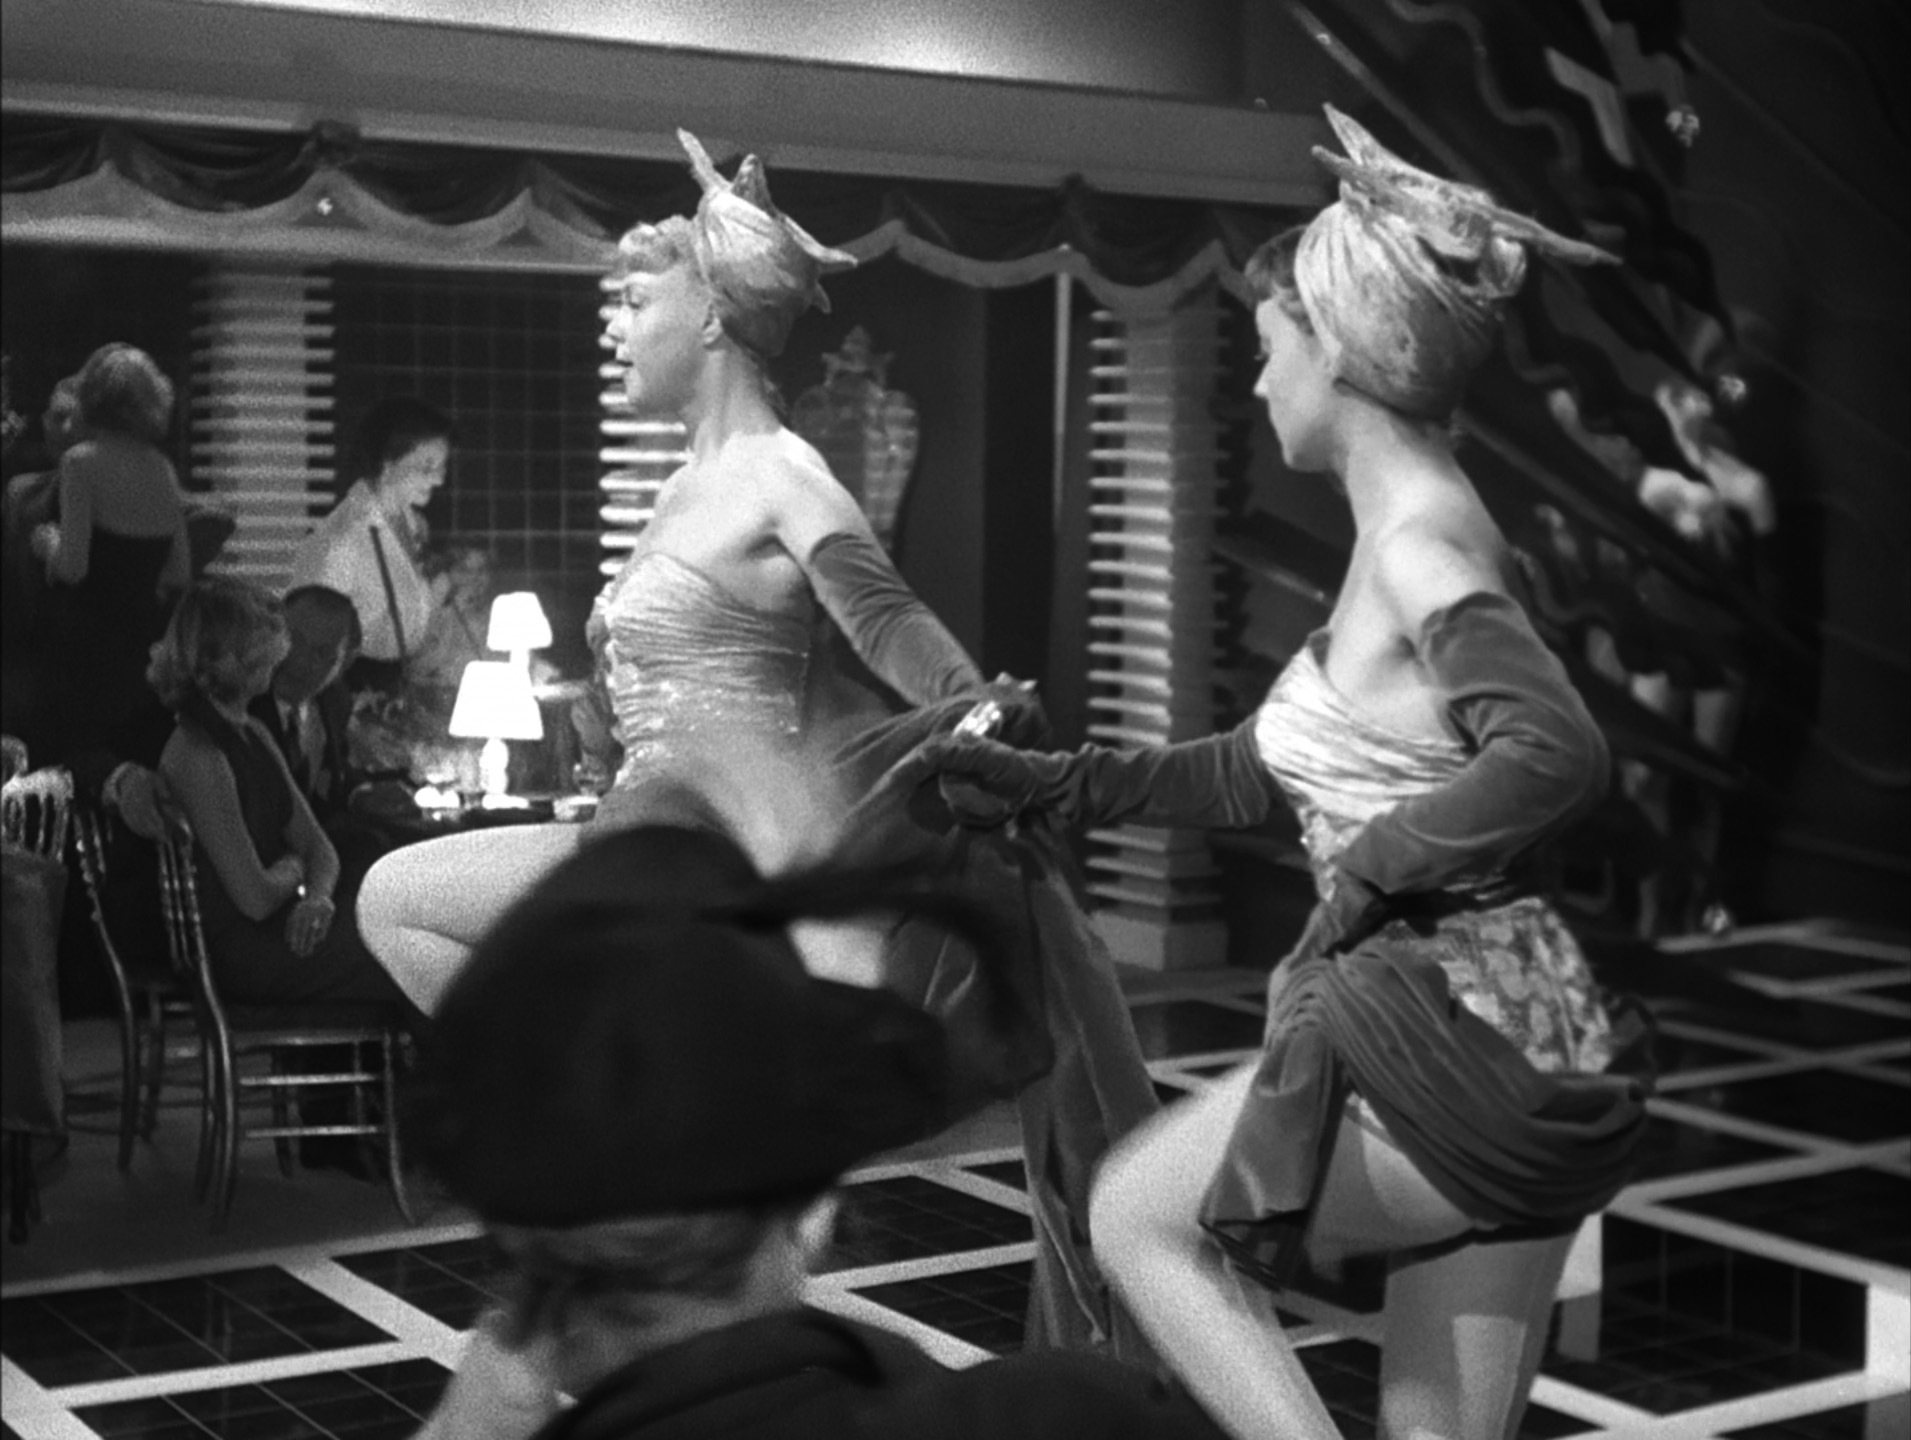 ジャンヌ・モロー（Jeanne Moreau）「現金に手を出すな」（1954）《踊り子編》_e0042361_17114260.jpg